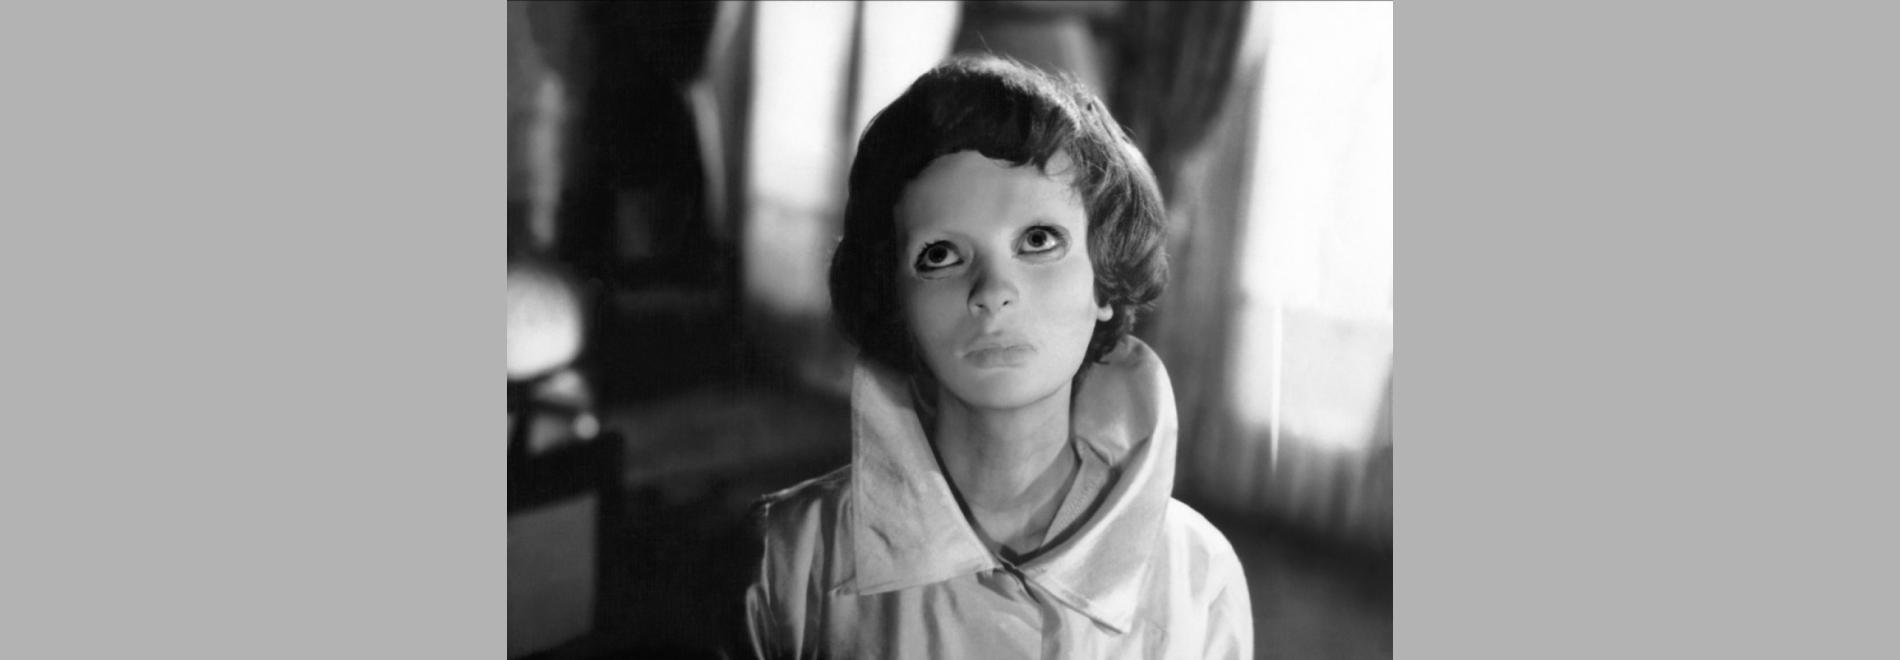 Les yeux sans visage (Georges Franju, 1959)